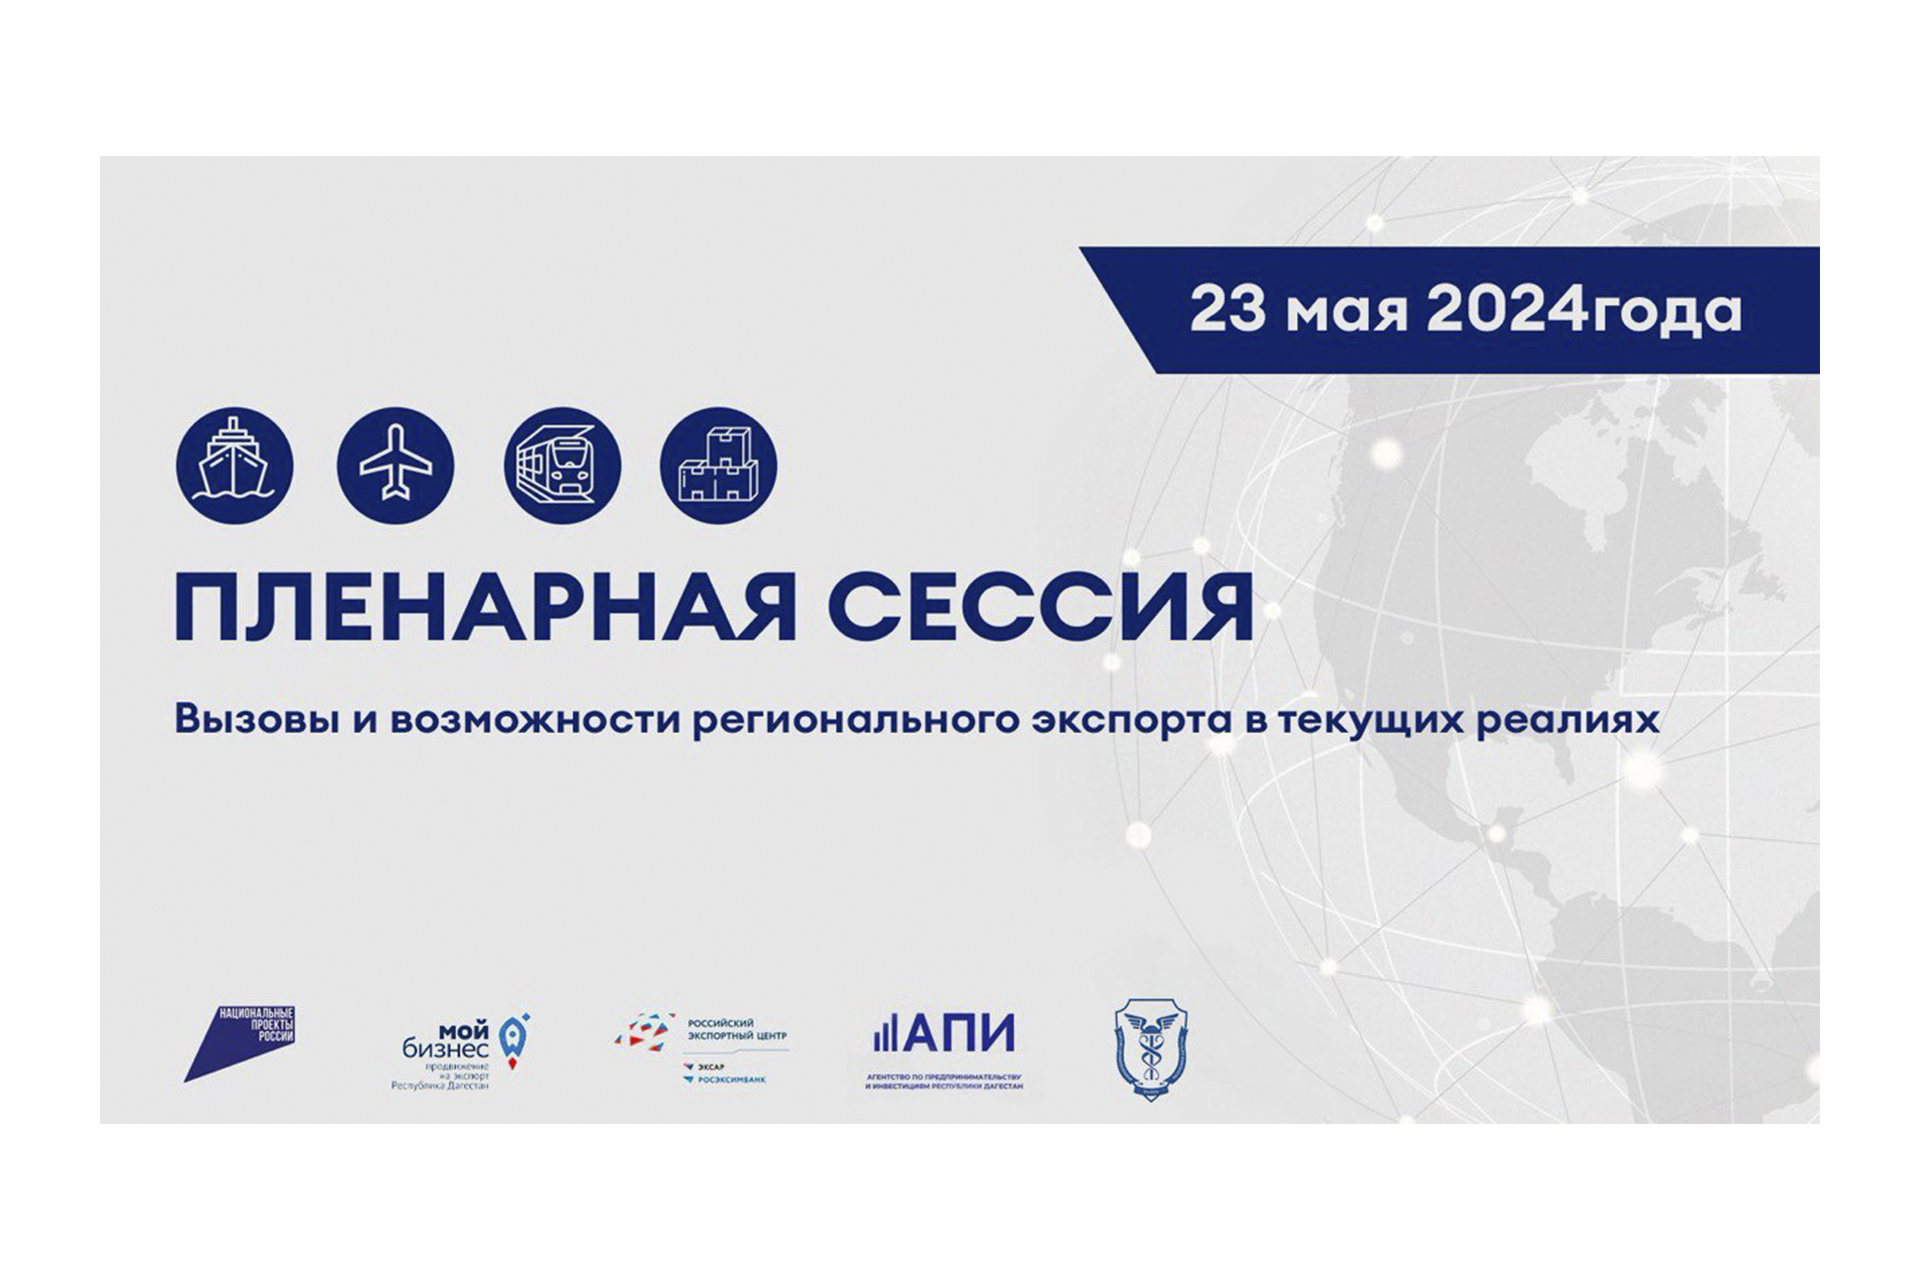 Центр поддержки экспорта РД совместно с Торгово-промышленной палатой РД проведет конференцию «Экспортный Навигатор: Дагестан 5.0»